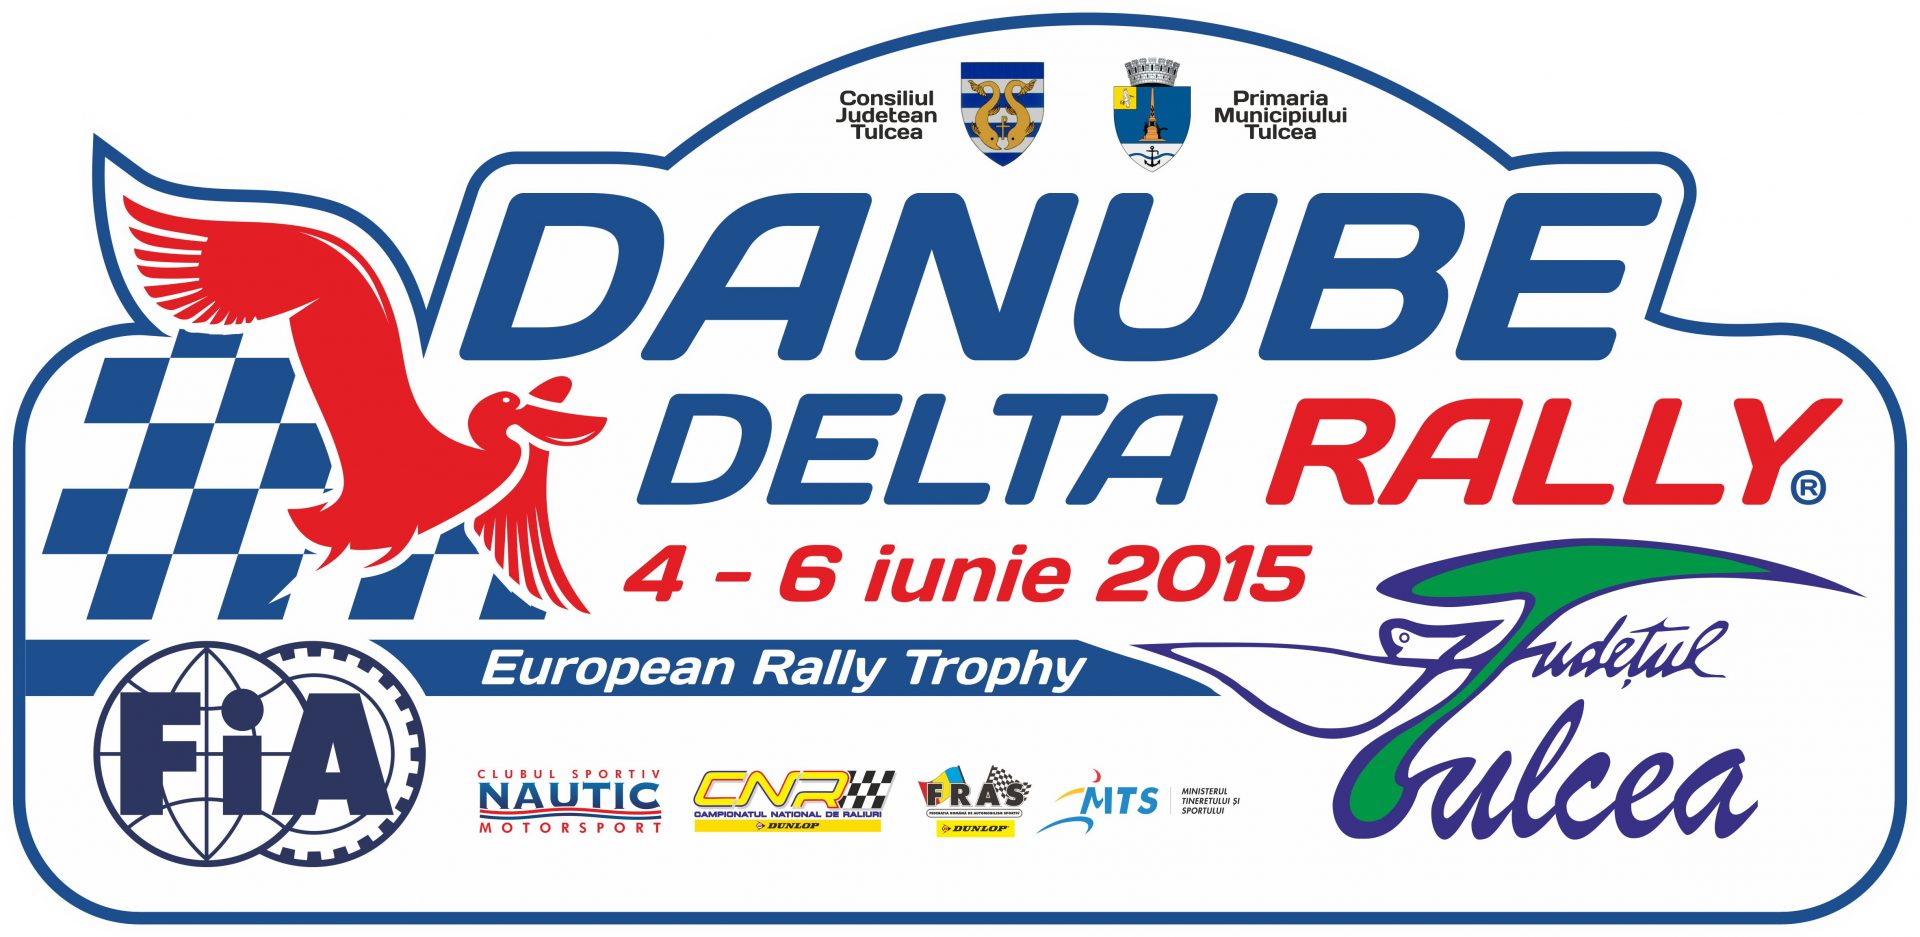 Danube Delta Rally 2015 – Documente oficiale